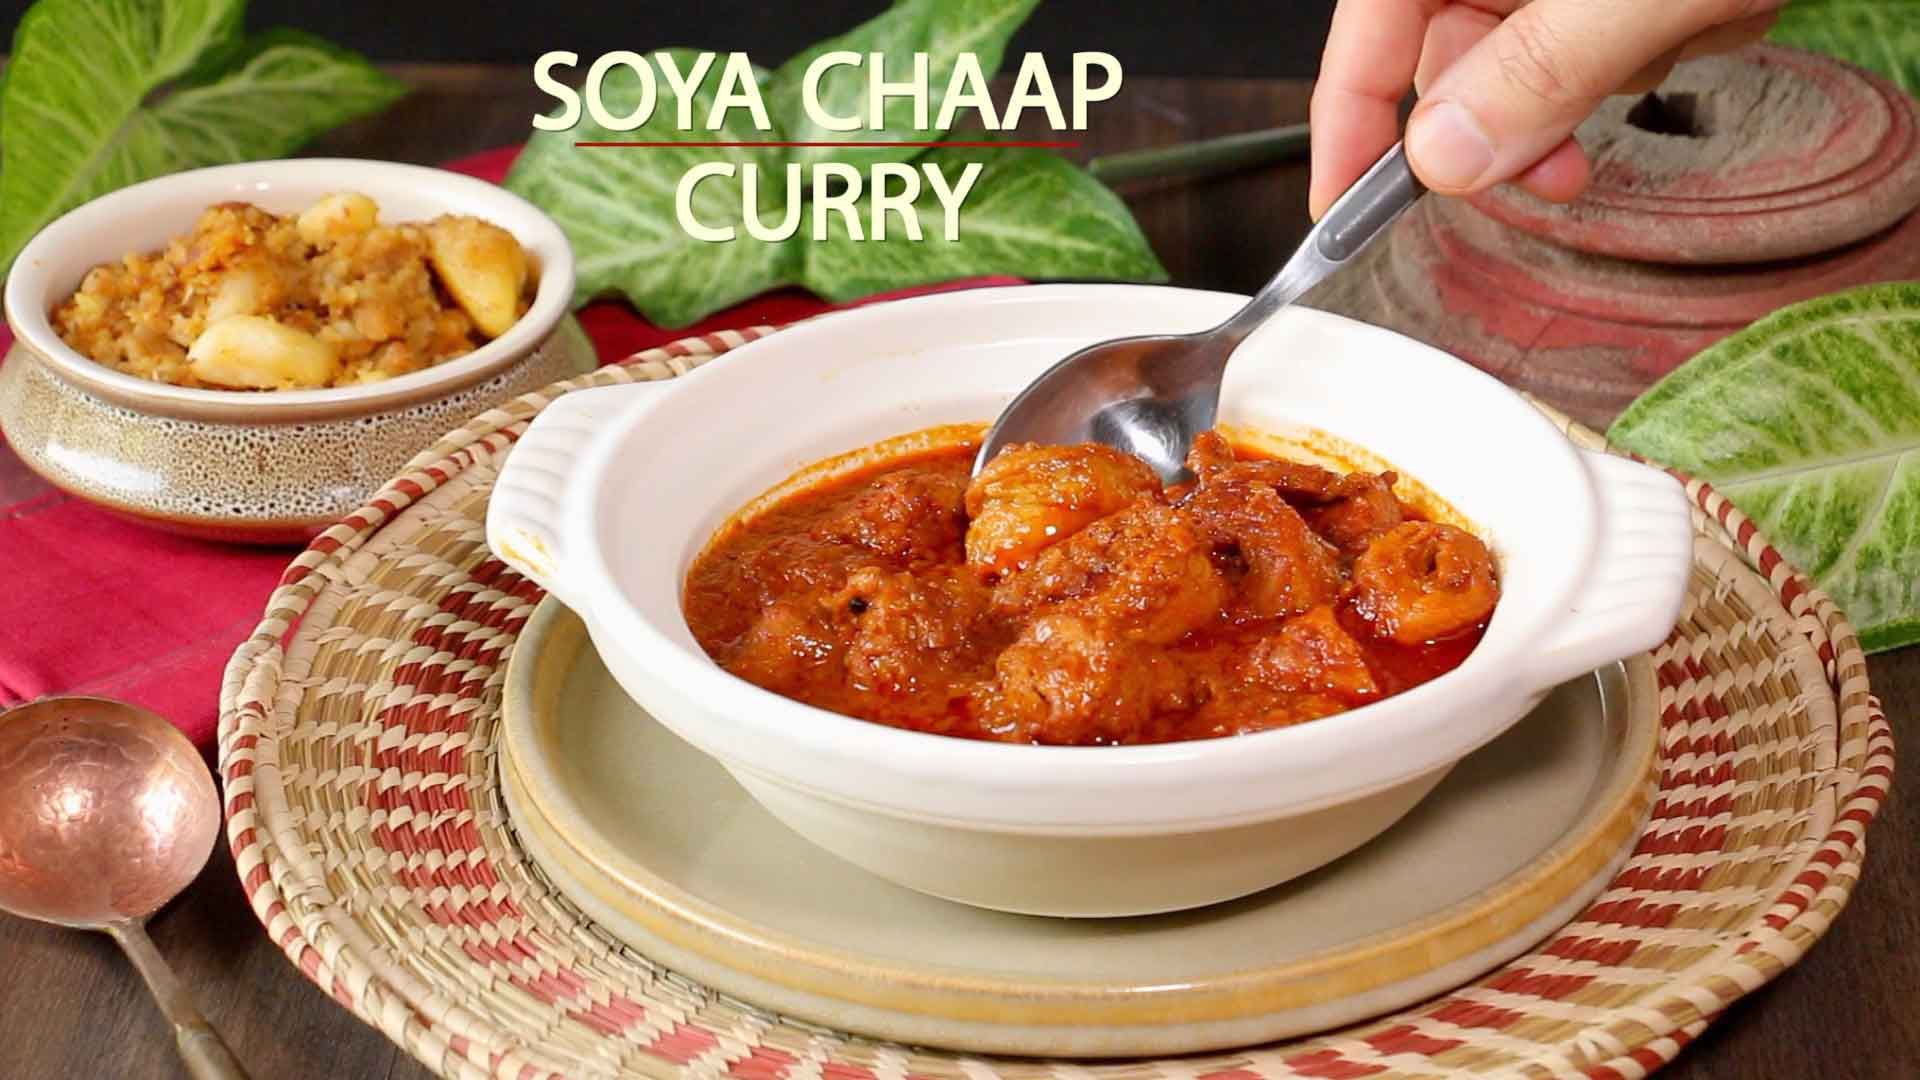 Soya Chaap Curry | Soya Chaap Recipe with Gravy | Soya Chaap Masala Rogan Josh Style